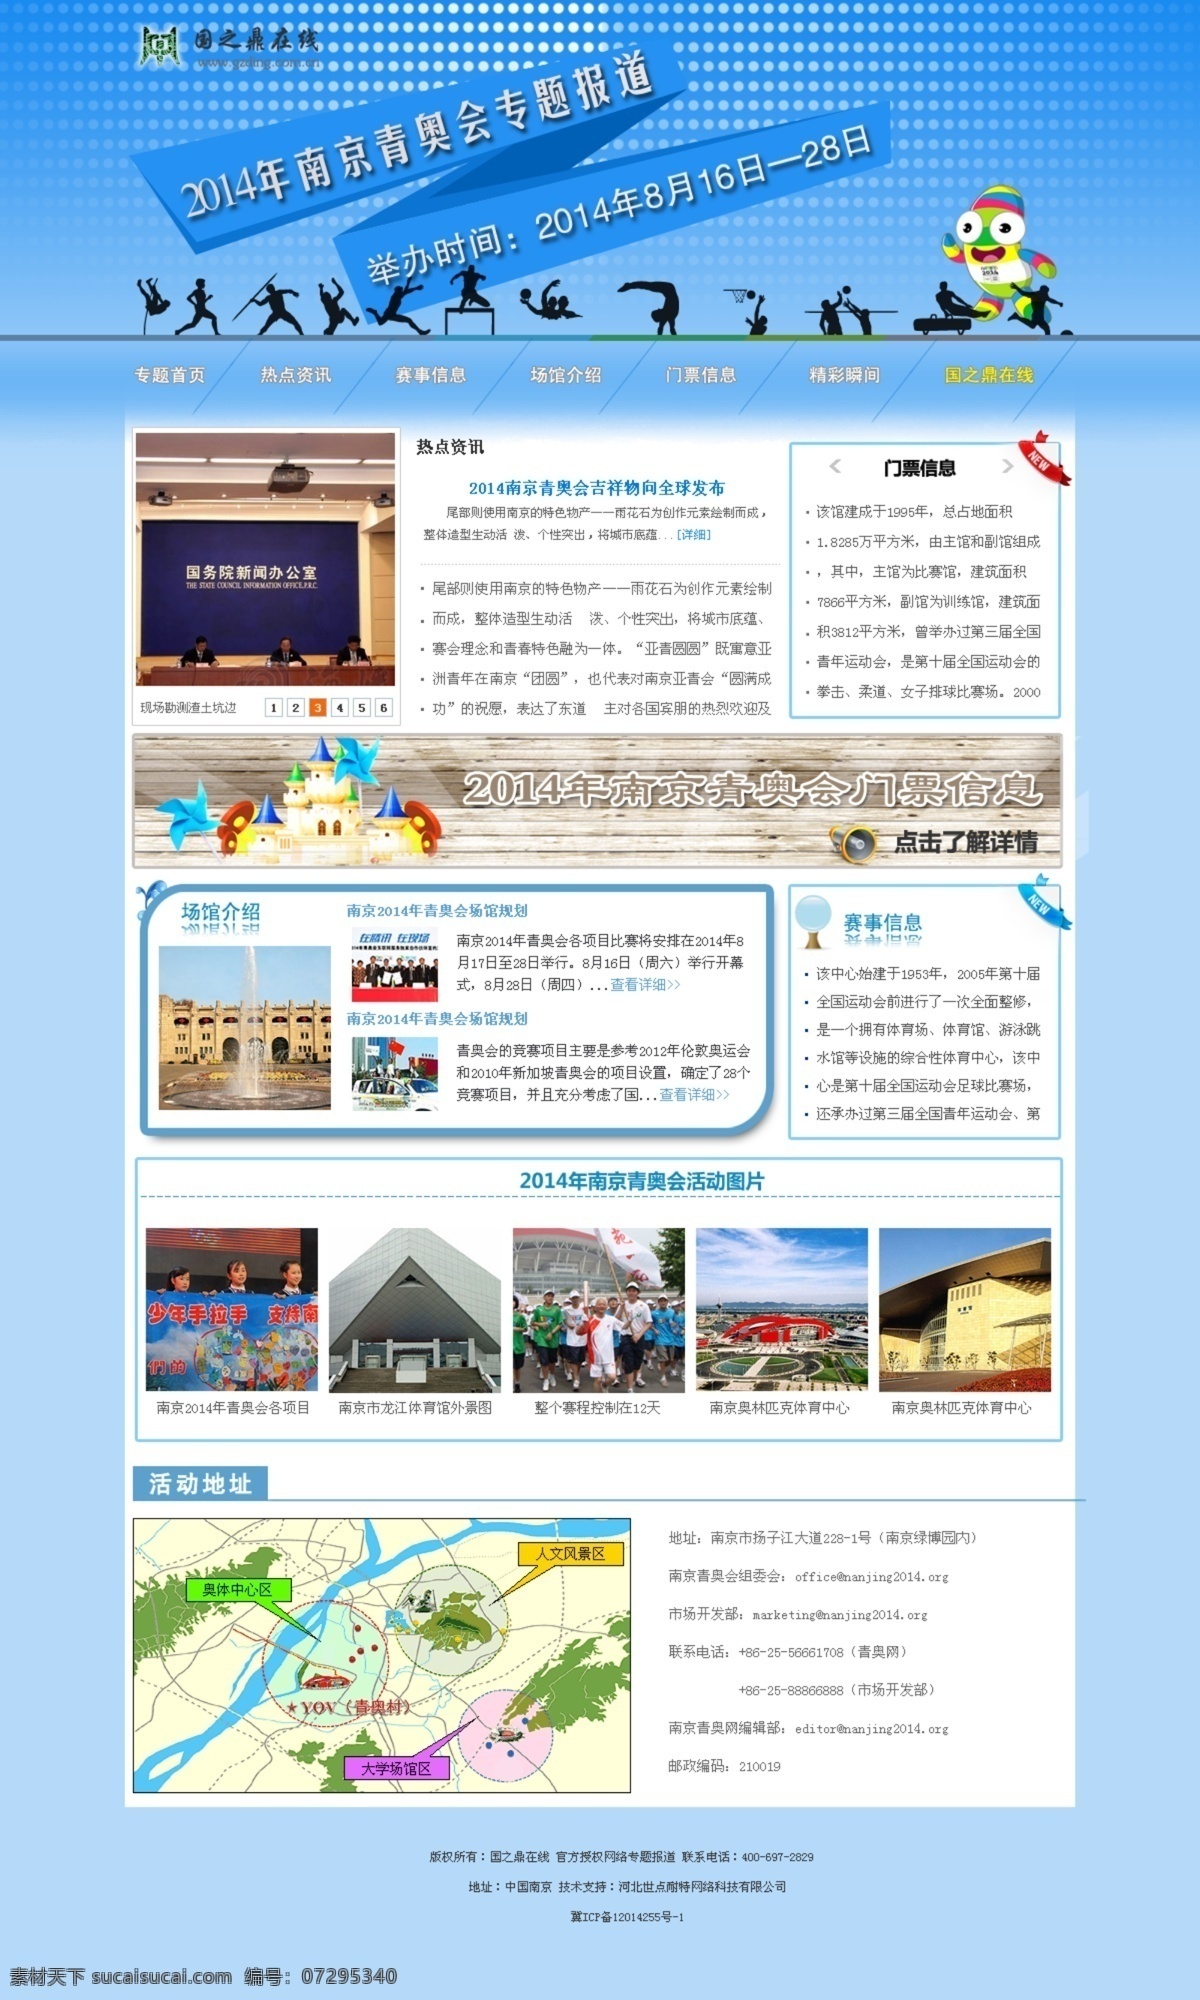 2014 年 南京 青 奥 会 青奥会 网页模板 源文件 中文模版 国之鼎在线 专题报道 节日素材 其他节日